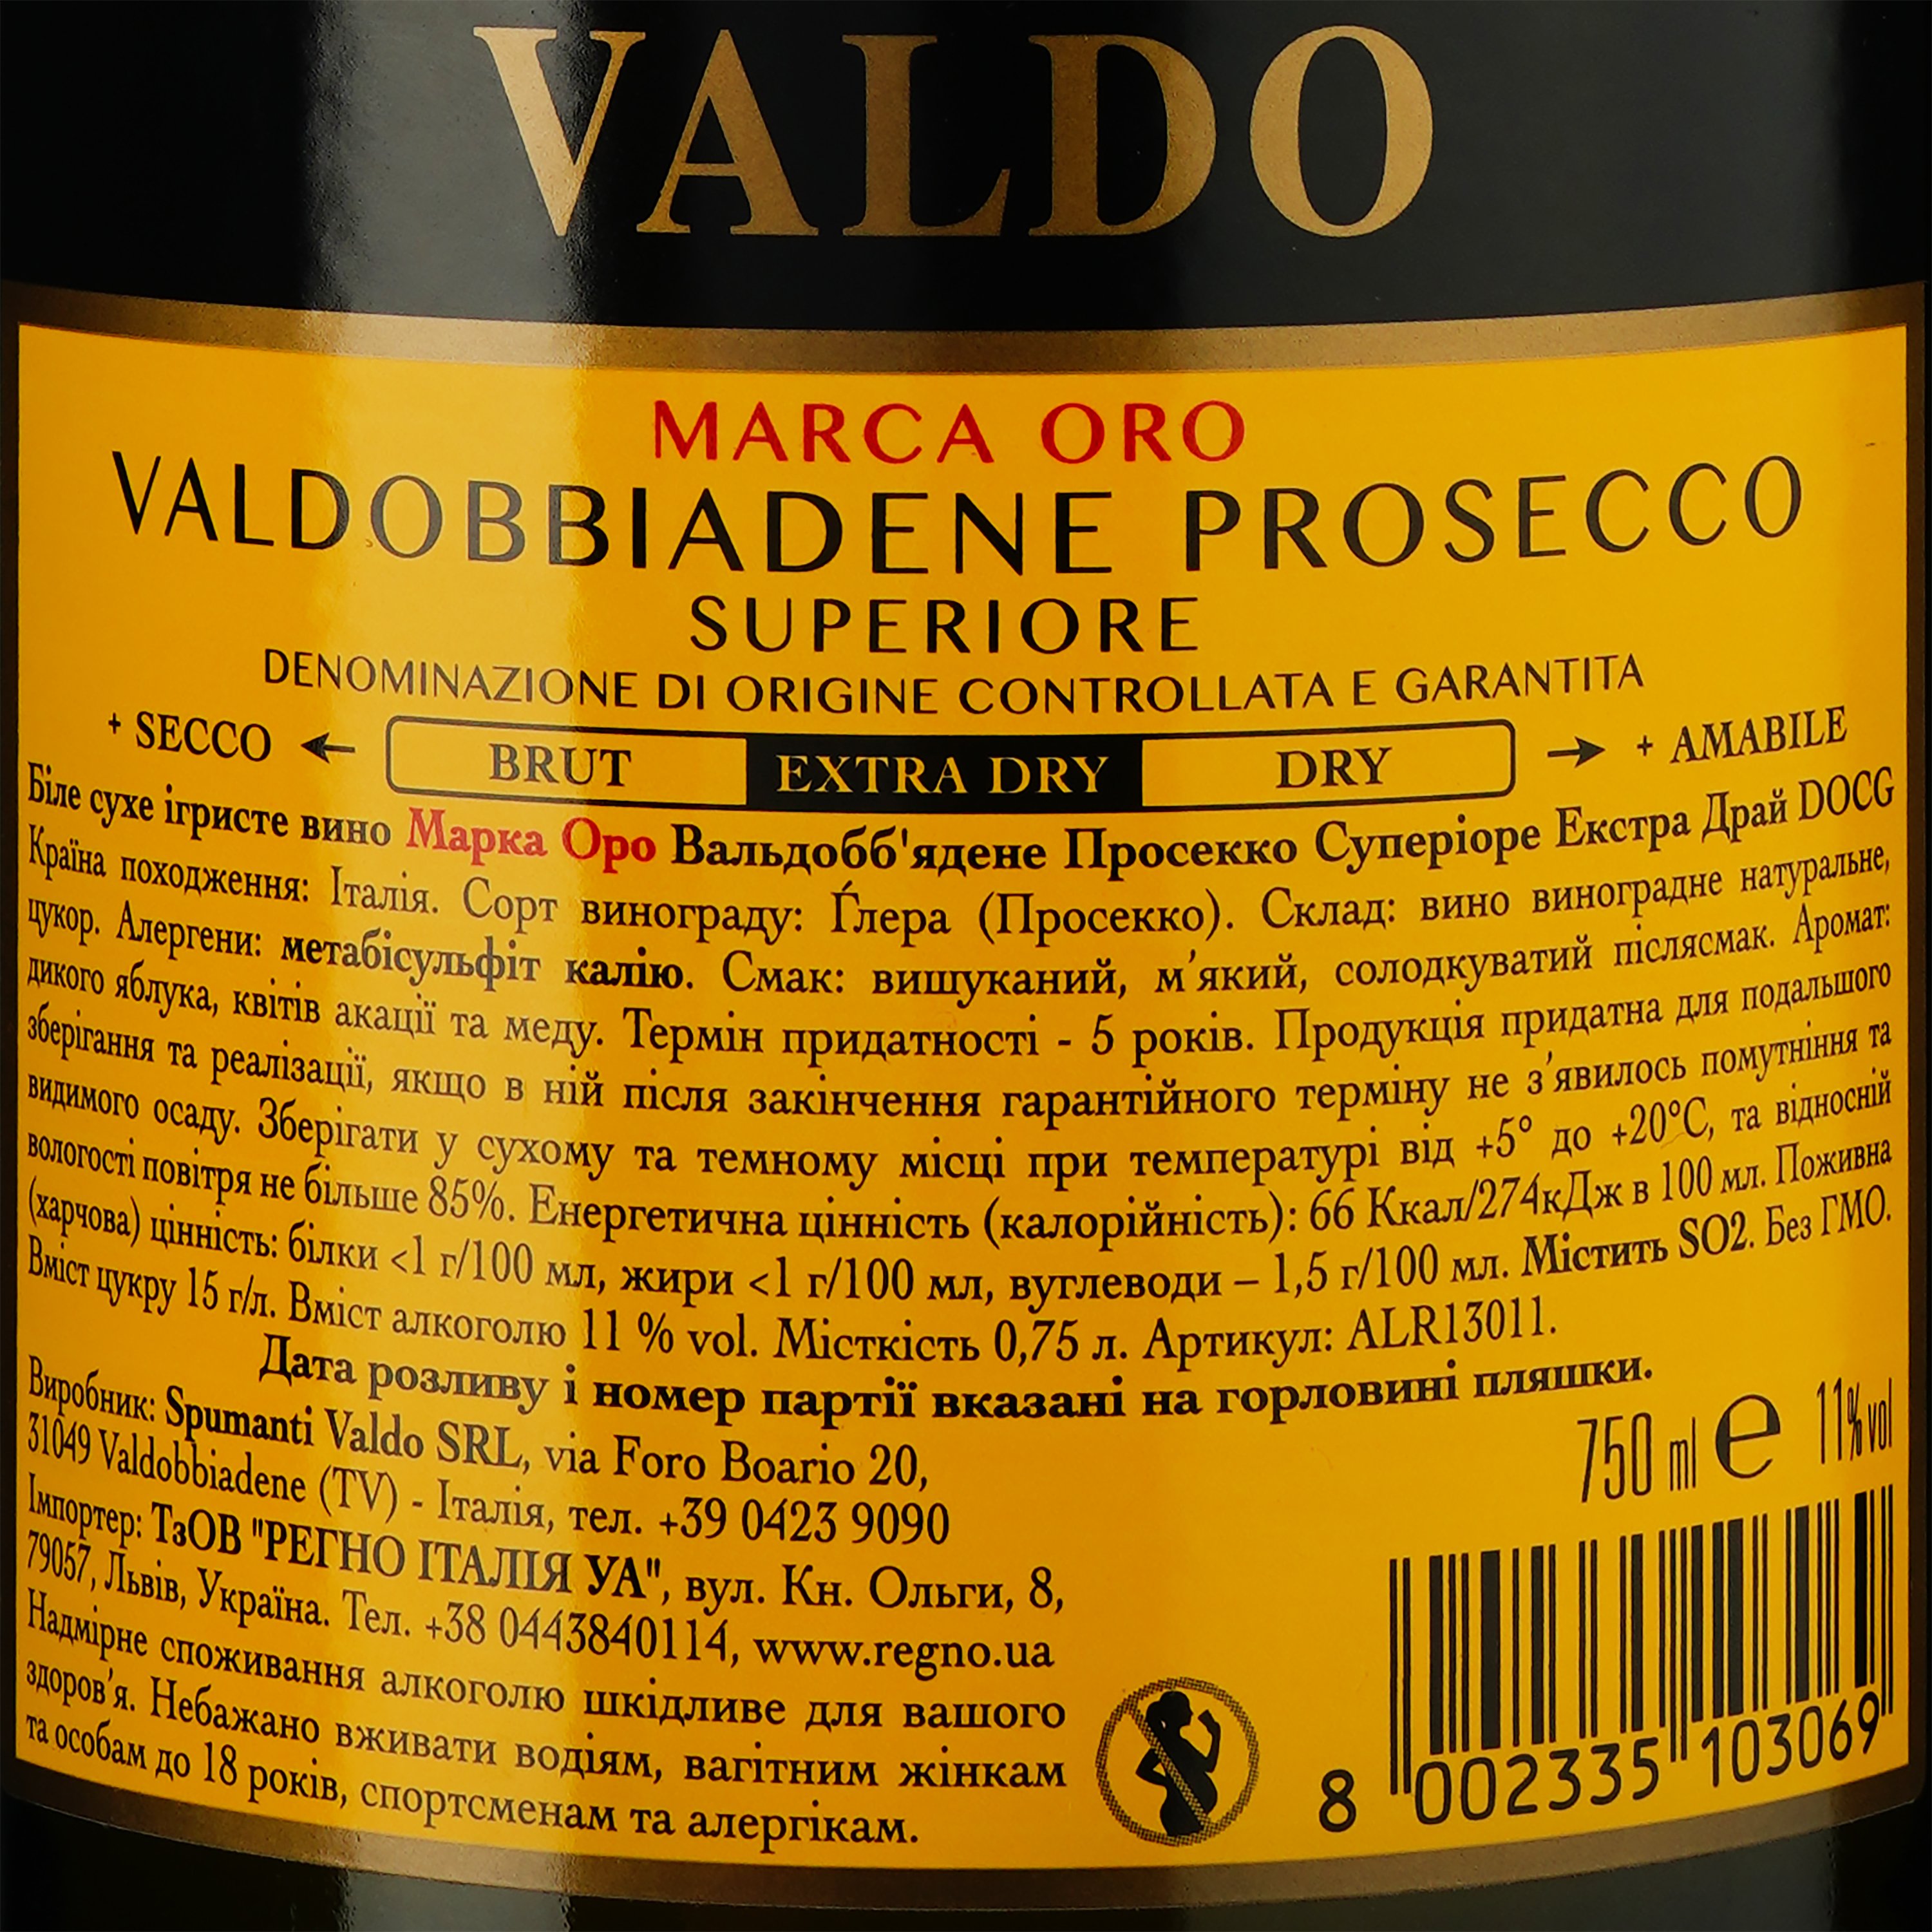 Вино игристое VALDO Marca Oro Valdobbiadene Prosecco Superiore Extra Dry, белое, сухое, 11%, 0,75 л (АLR13011) - фото 3